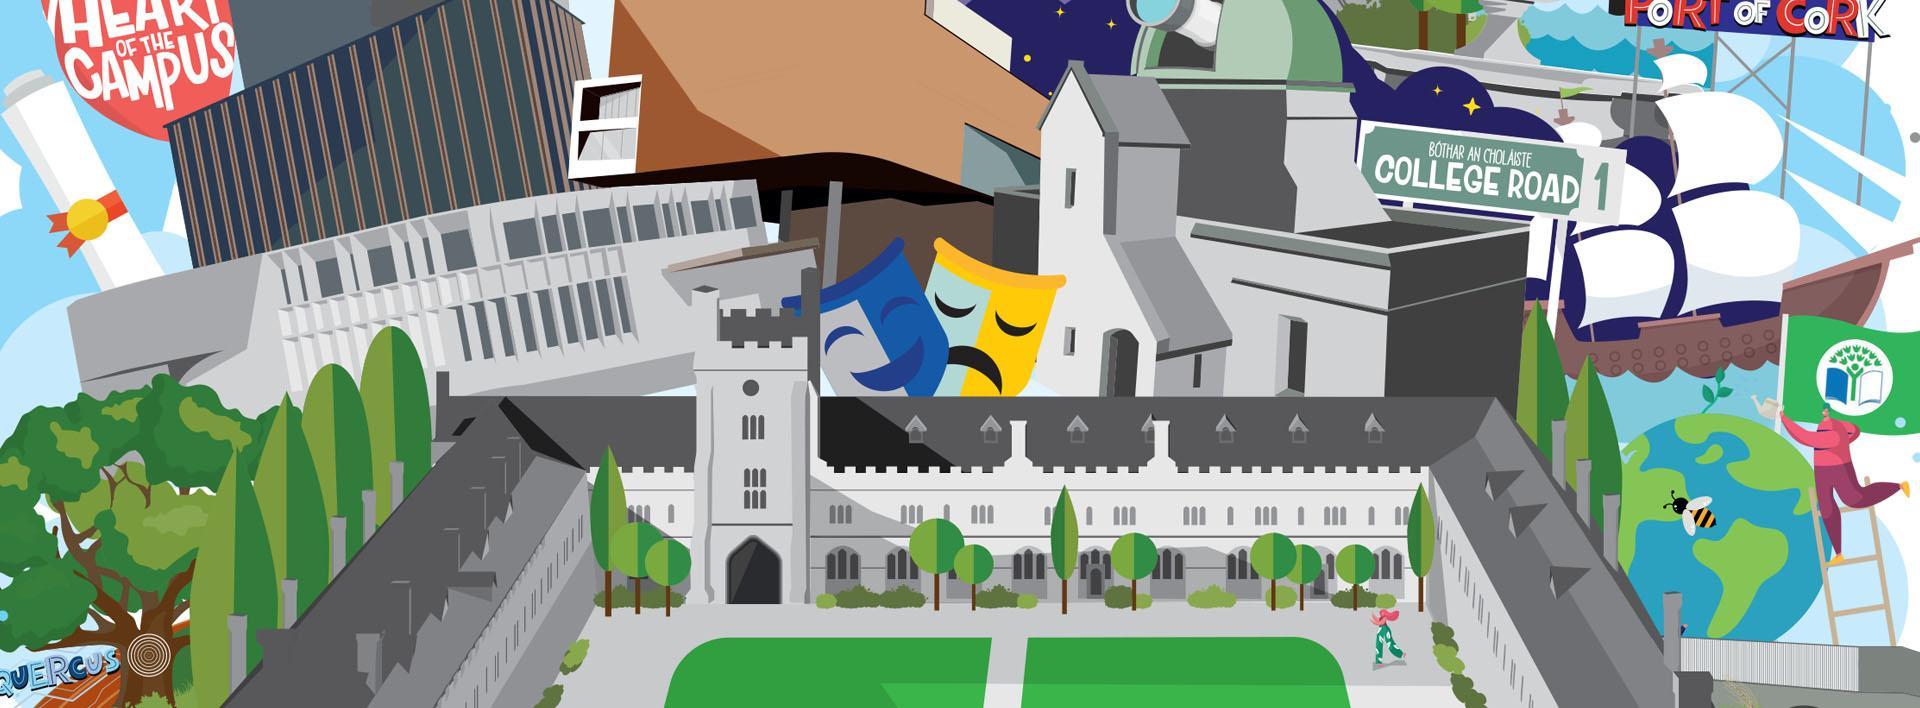 cartoon image of UCC campus